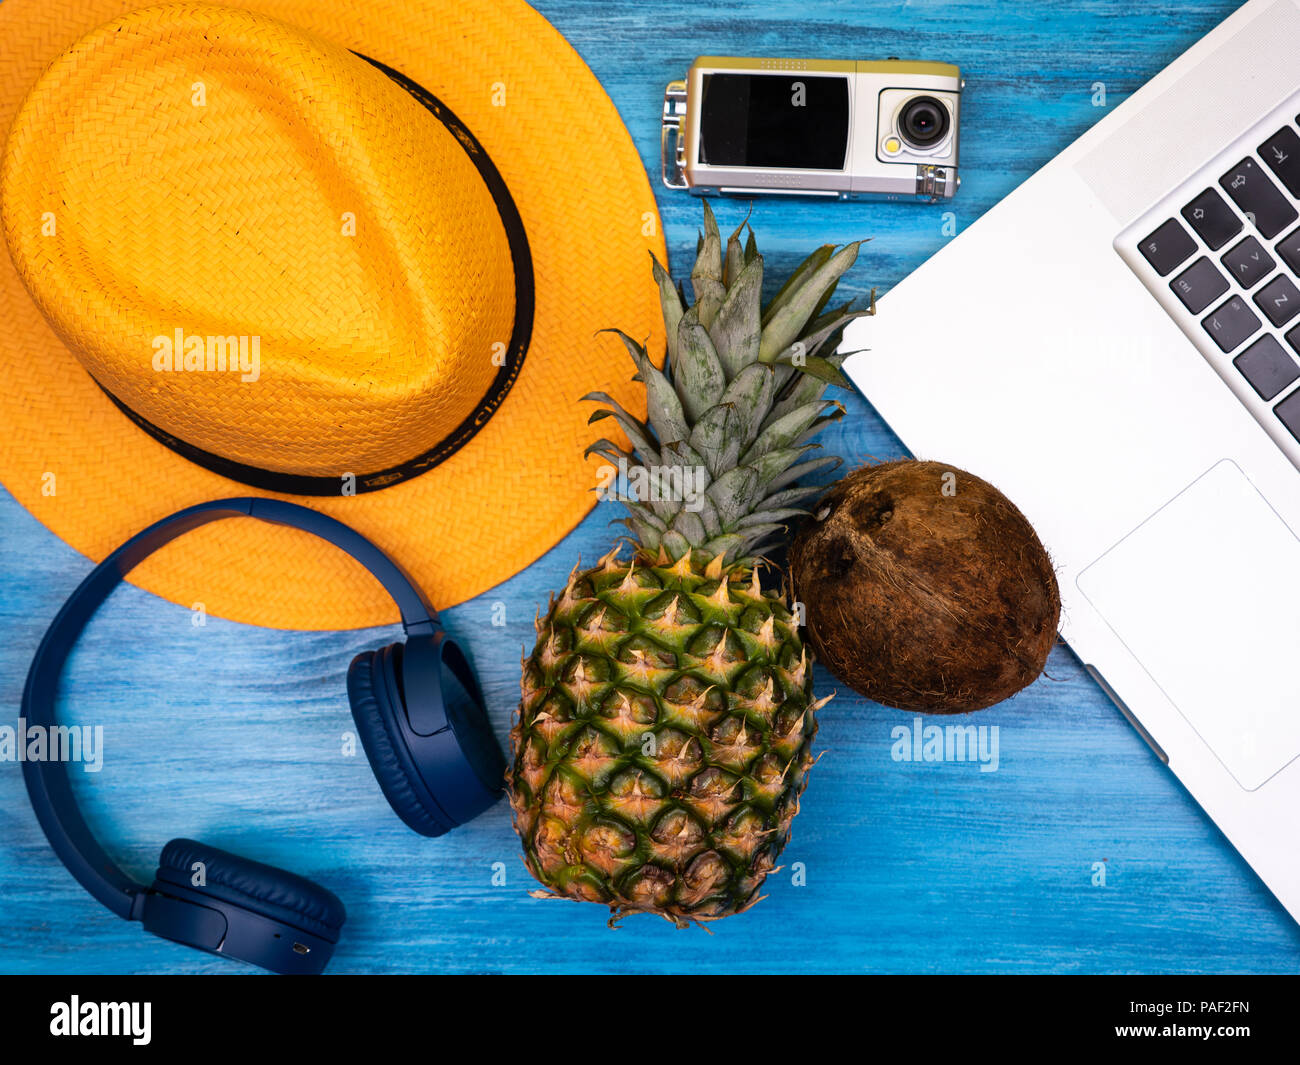 Hut, Kopfhörer, Action Kamera, Laptop, Ananas und Kokosnuss Stockfoto